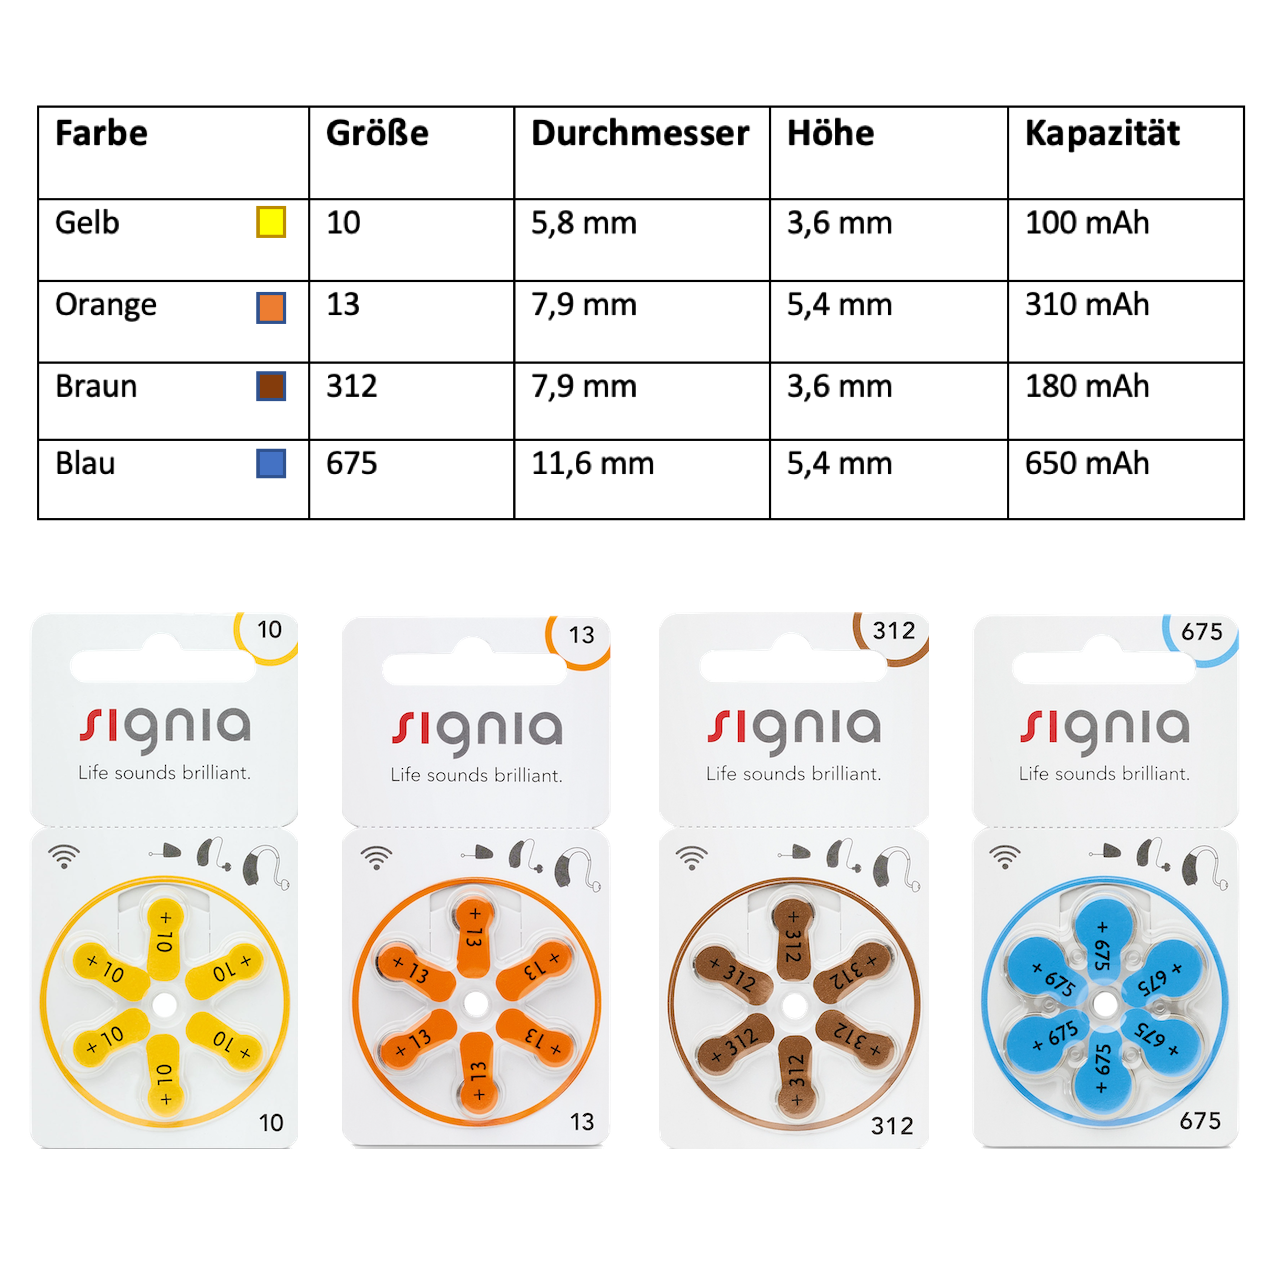 Übersicht über gebräuchliche Spezialzellen, bzw. Batterien für Hörgeräte mit Farben und Größen